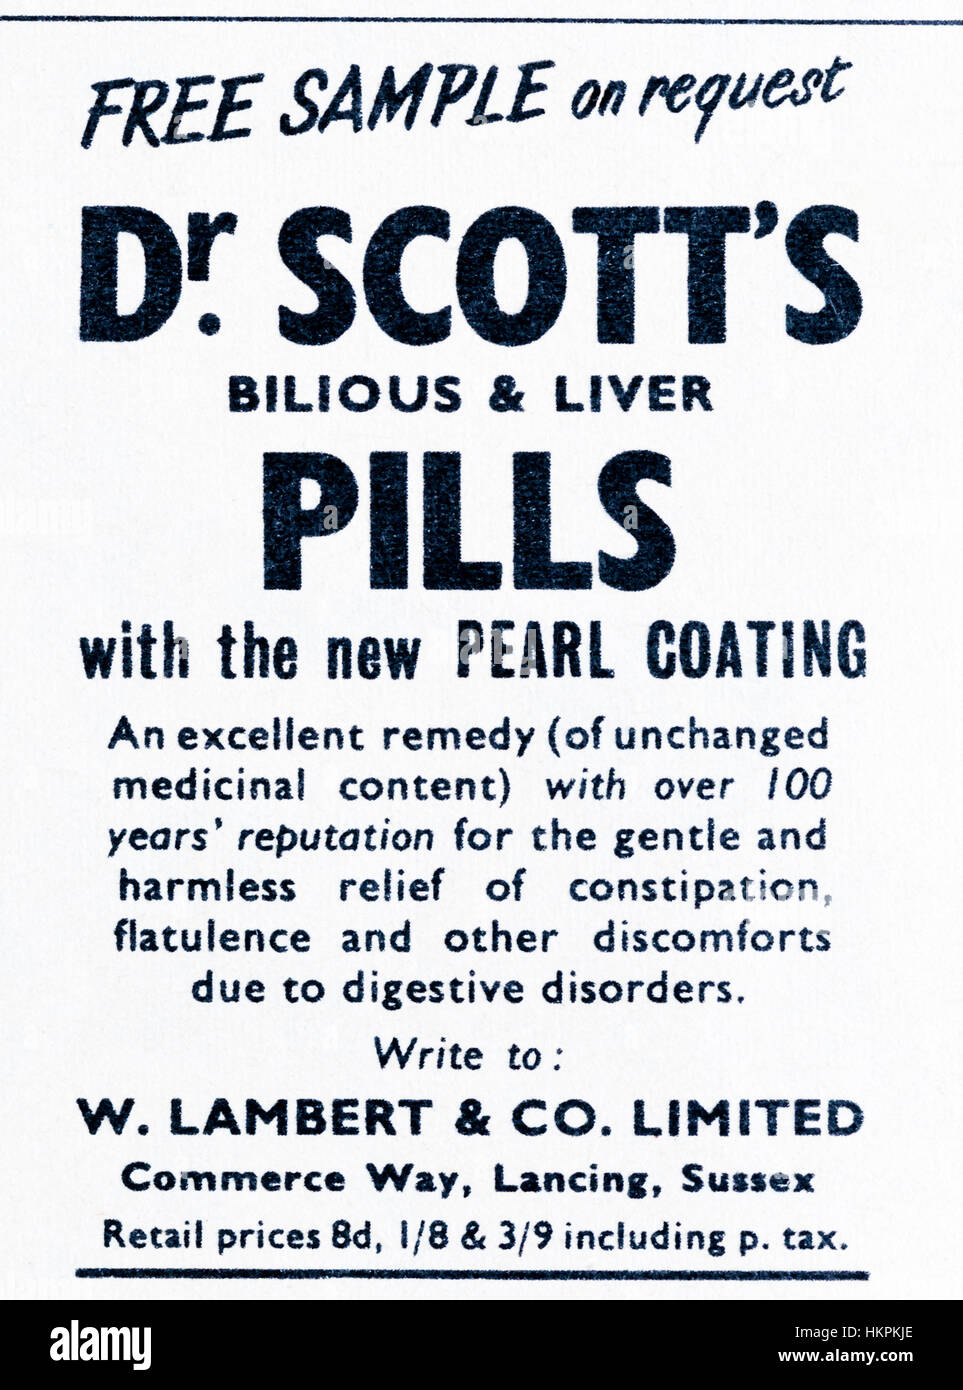 Un magazine 1953 publicité pour le Dr Scott's foie bilieux et comprimés. Banque D'Images